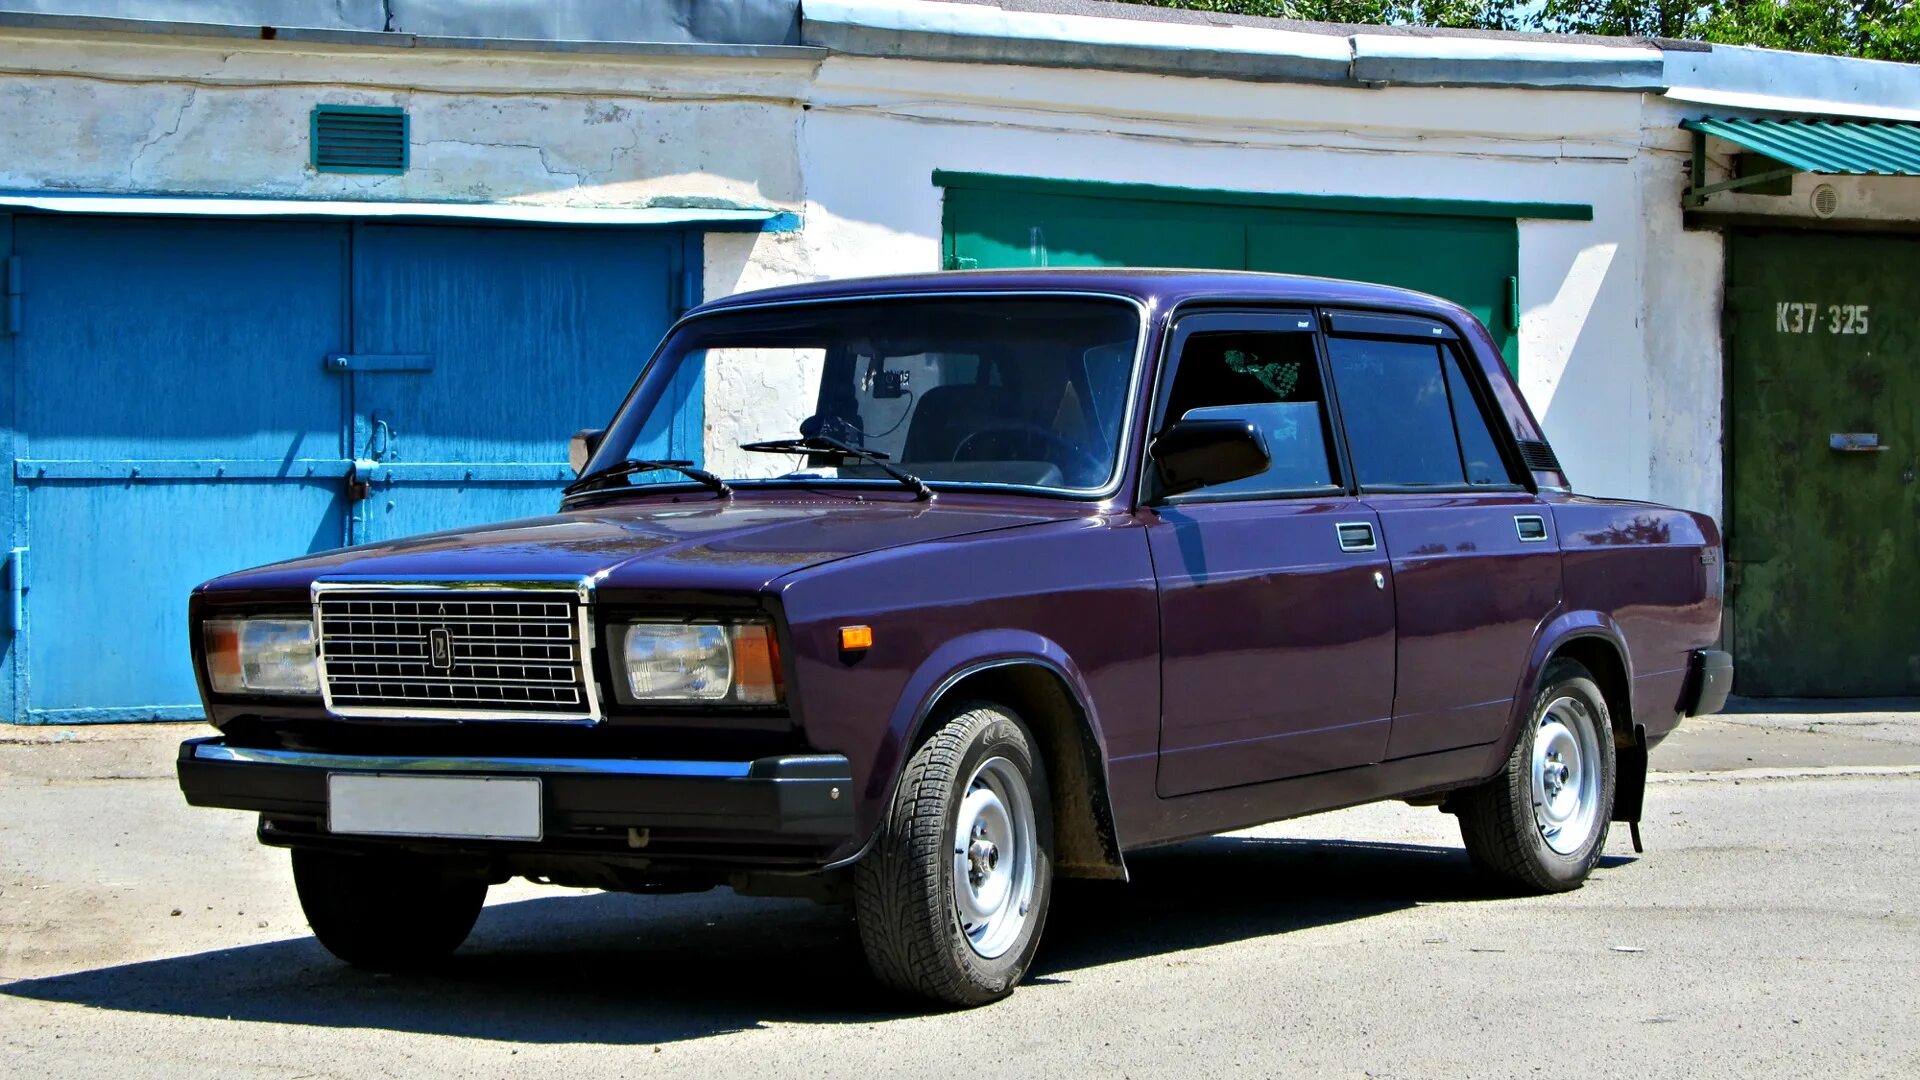 Семерка 20. ВАЗ-2107 «Жигули». ВАЗ 2107 универсал.